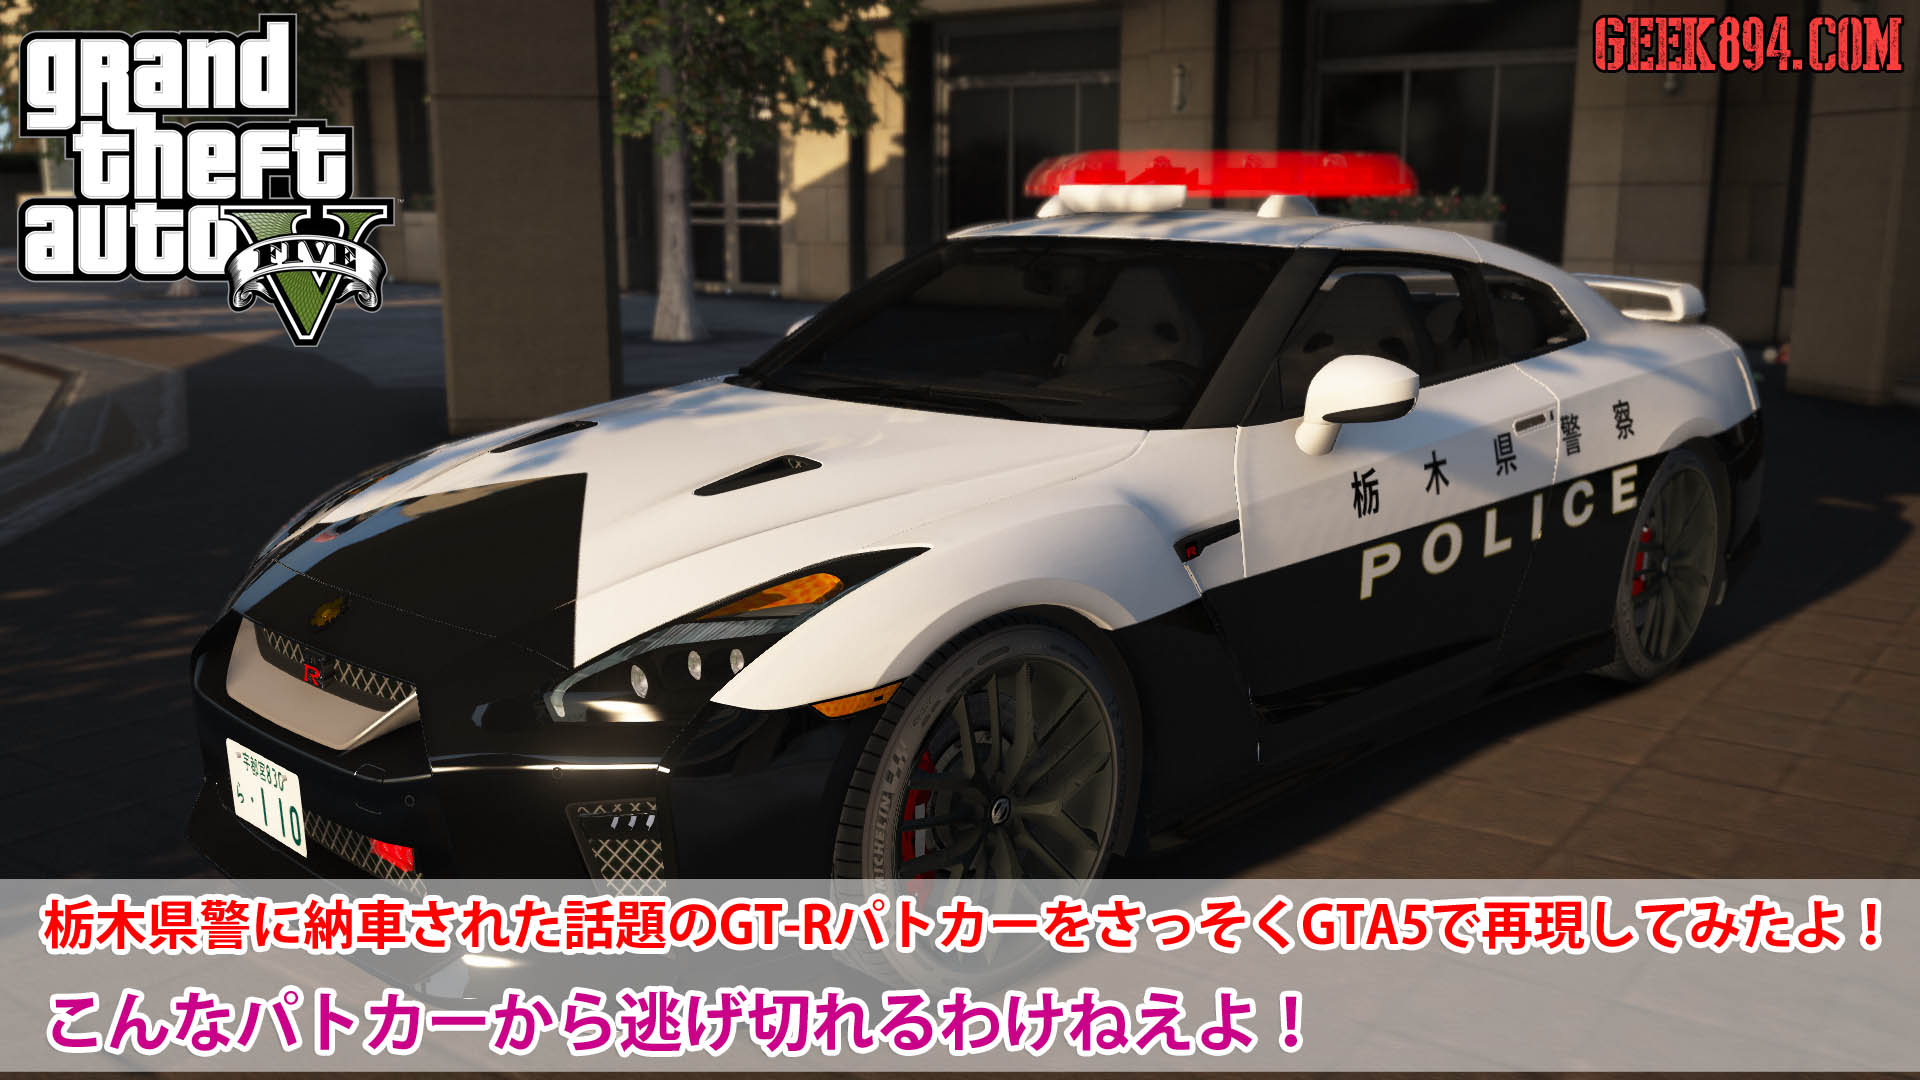 栃木県警に納車された話題のgt Rパトカーをさっそくgta5で再現してみたよ こんなパトカーから逃げ切れるわけねえよ Geek894 Com